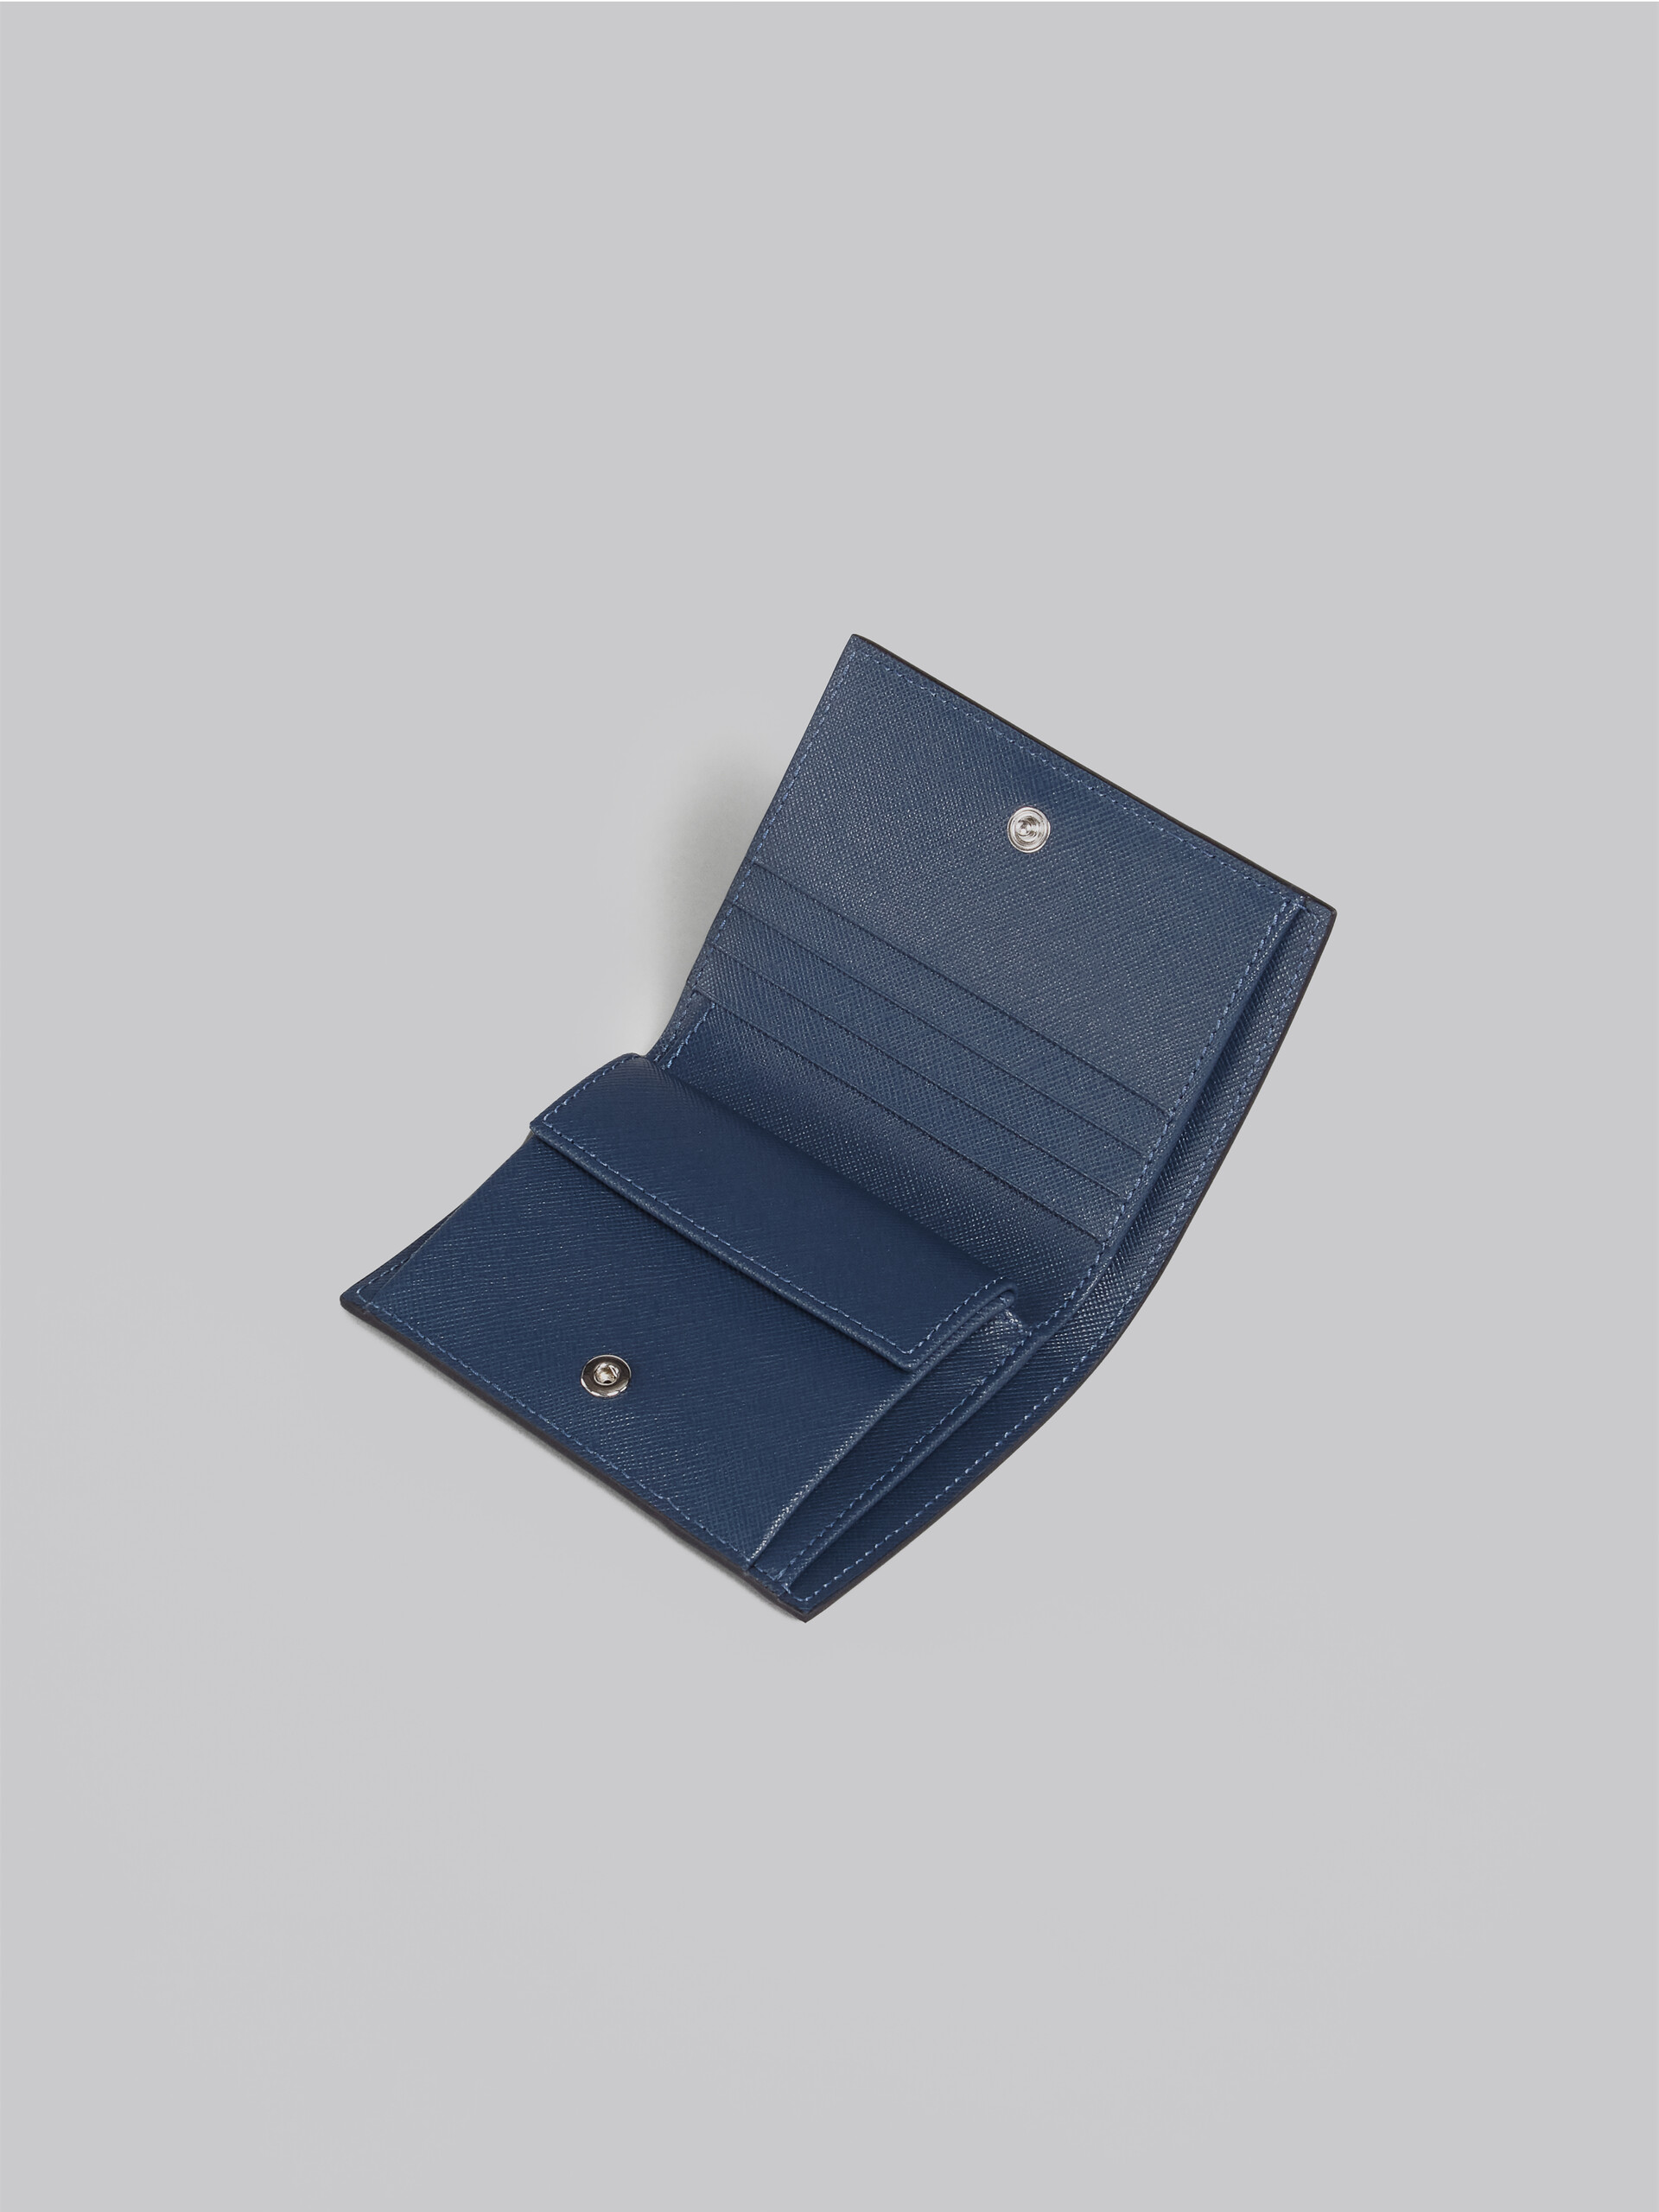 Portafoglio bi-fold in saffiano nero verde e blu - Portafogli - Image 4